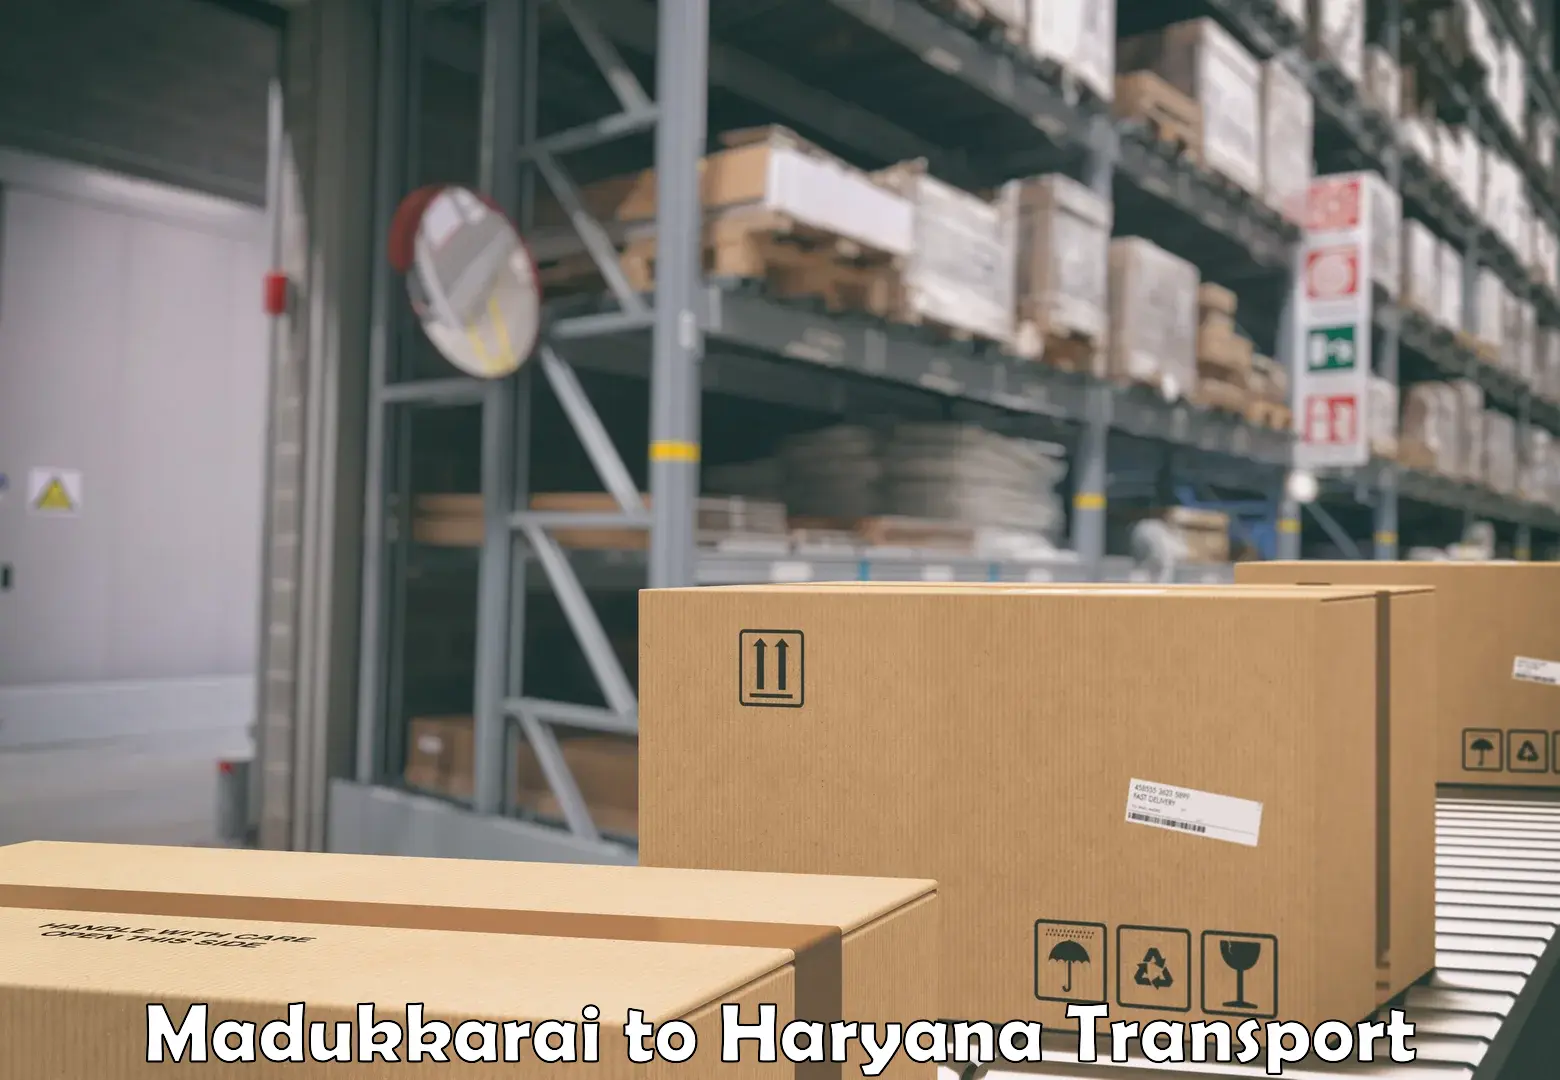 Container transportation services Madukkarai to IIIT Sonepat